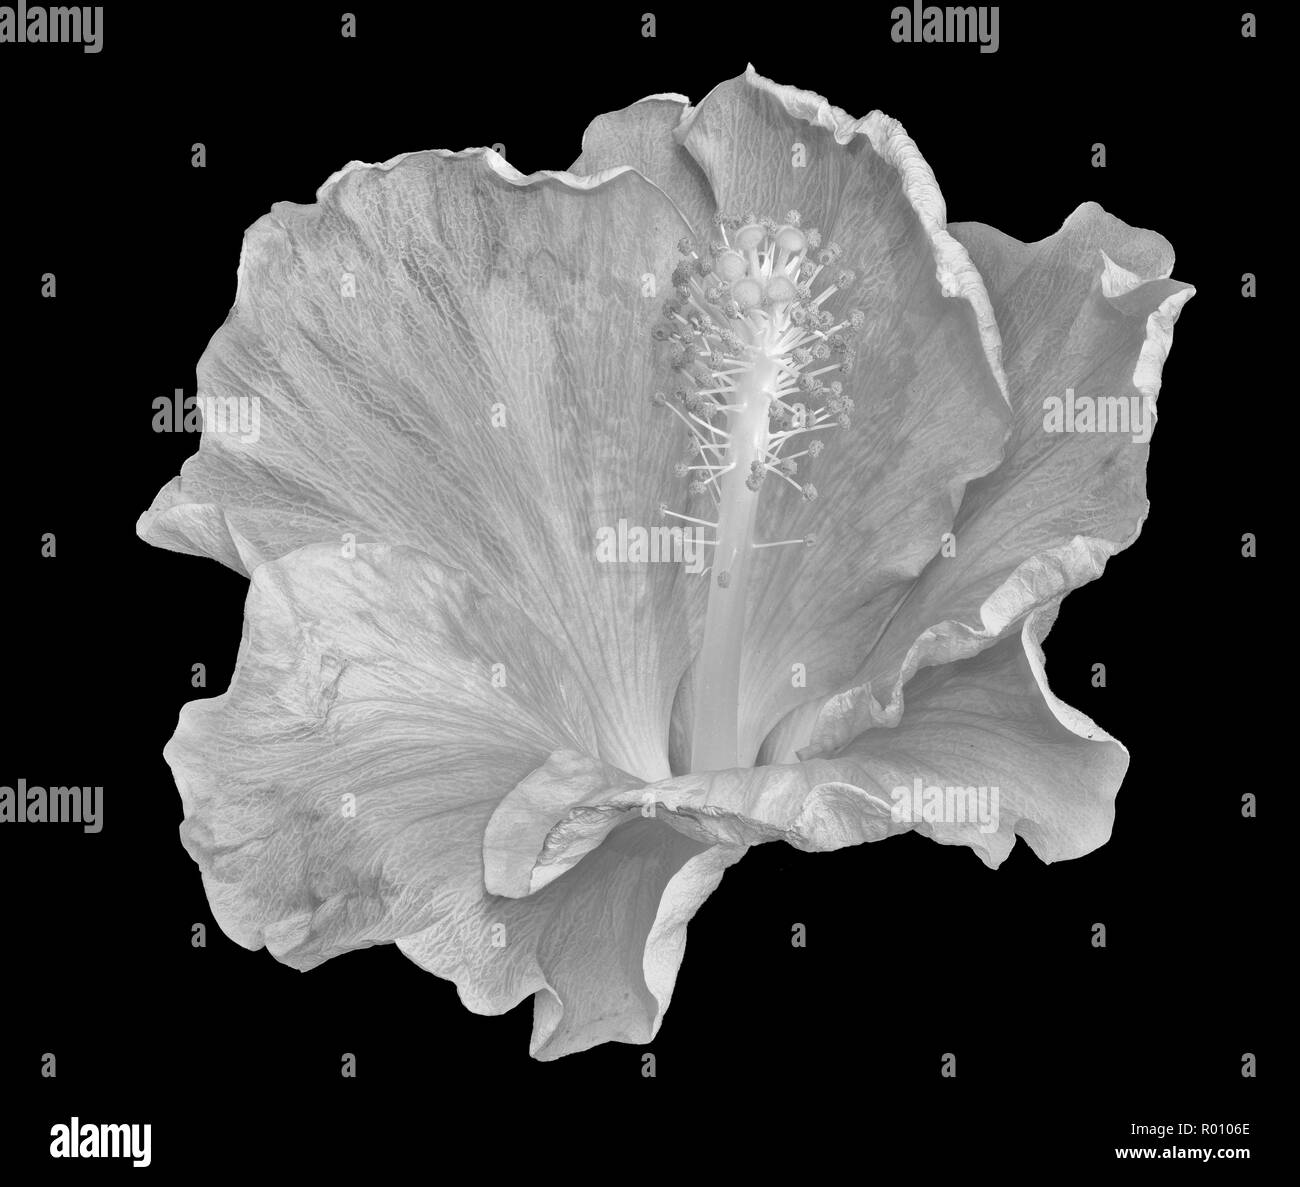 Floreali chiave alta monocromatici in bianco e nero di fiori macro immagine di un singolo isolato wide open sbocciano i fiori di ibisco con texture dettagliate,sfondo nero Foto Stock